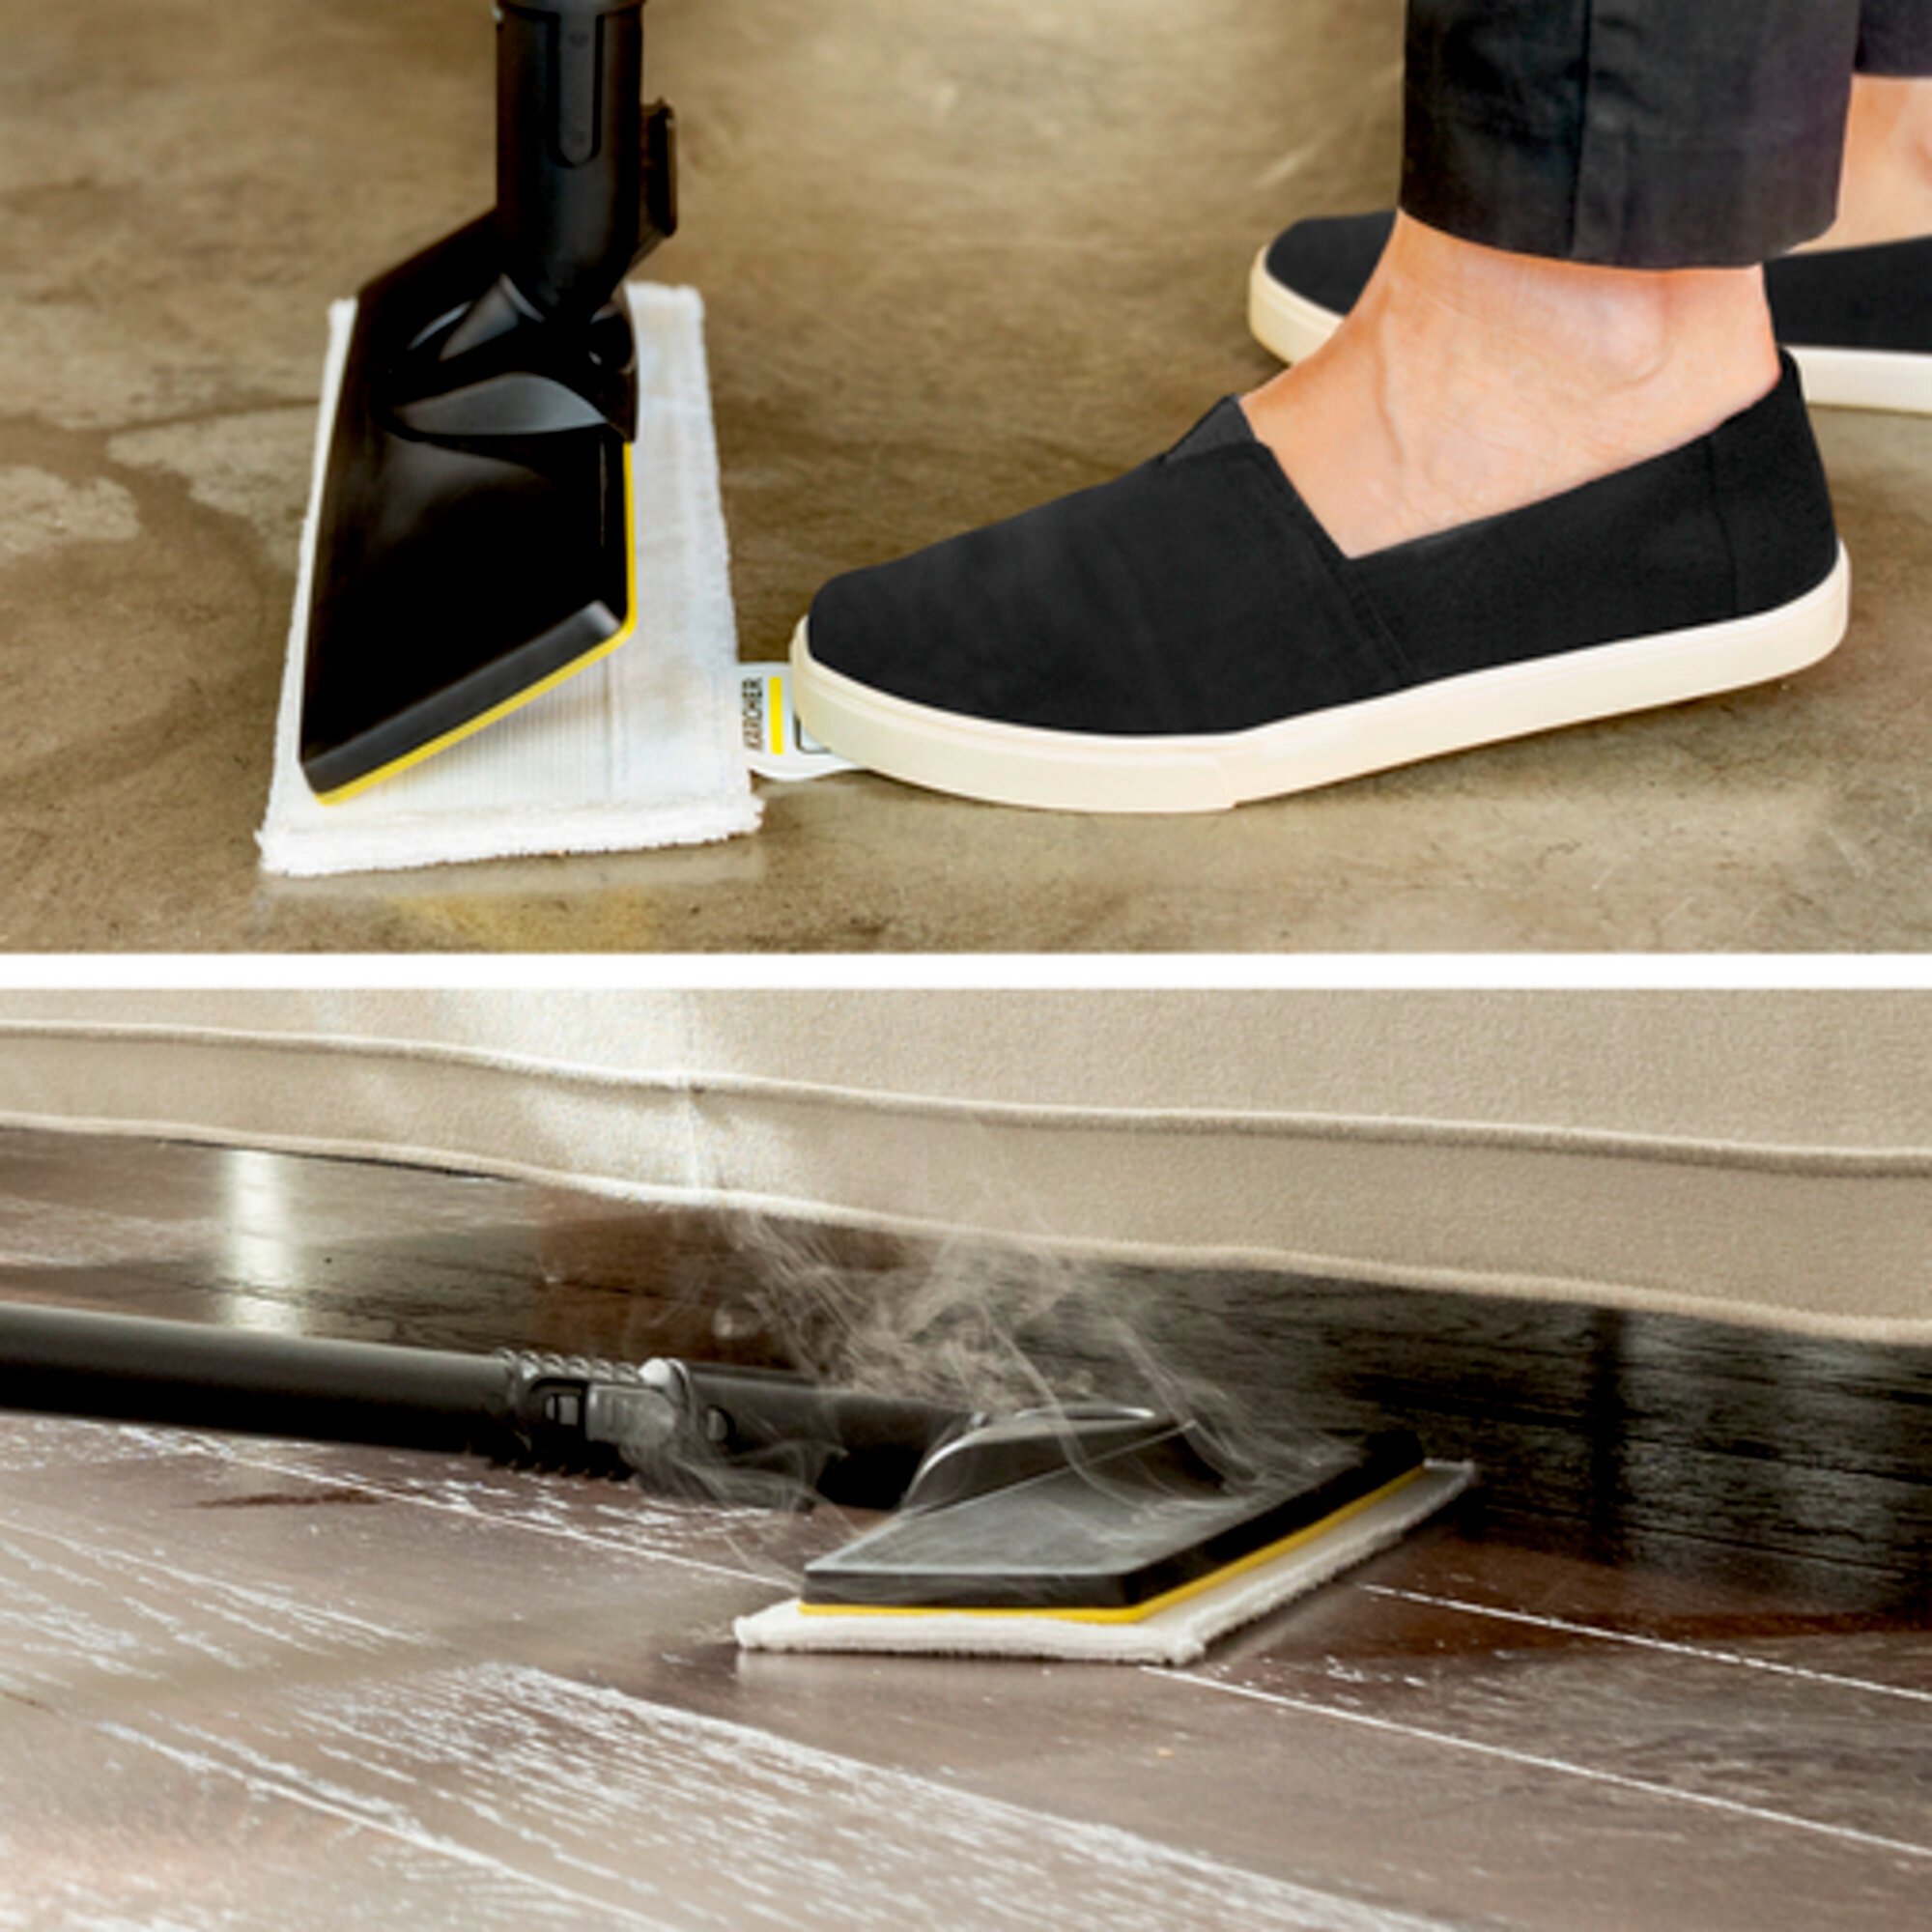 Aurupuhasti SC 2 EasyFix Iron: EasyFix põrandapuhastuskomplekt koos paindliku ühendusega põrandaotsikule ja kleepuva kinnitussüsteemiga põrandamopi jaoks.